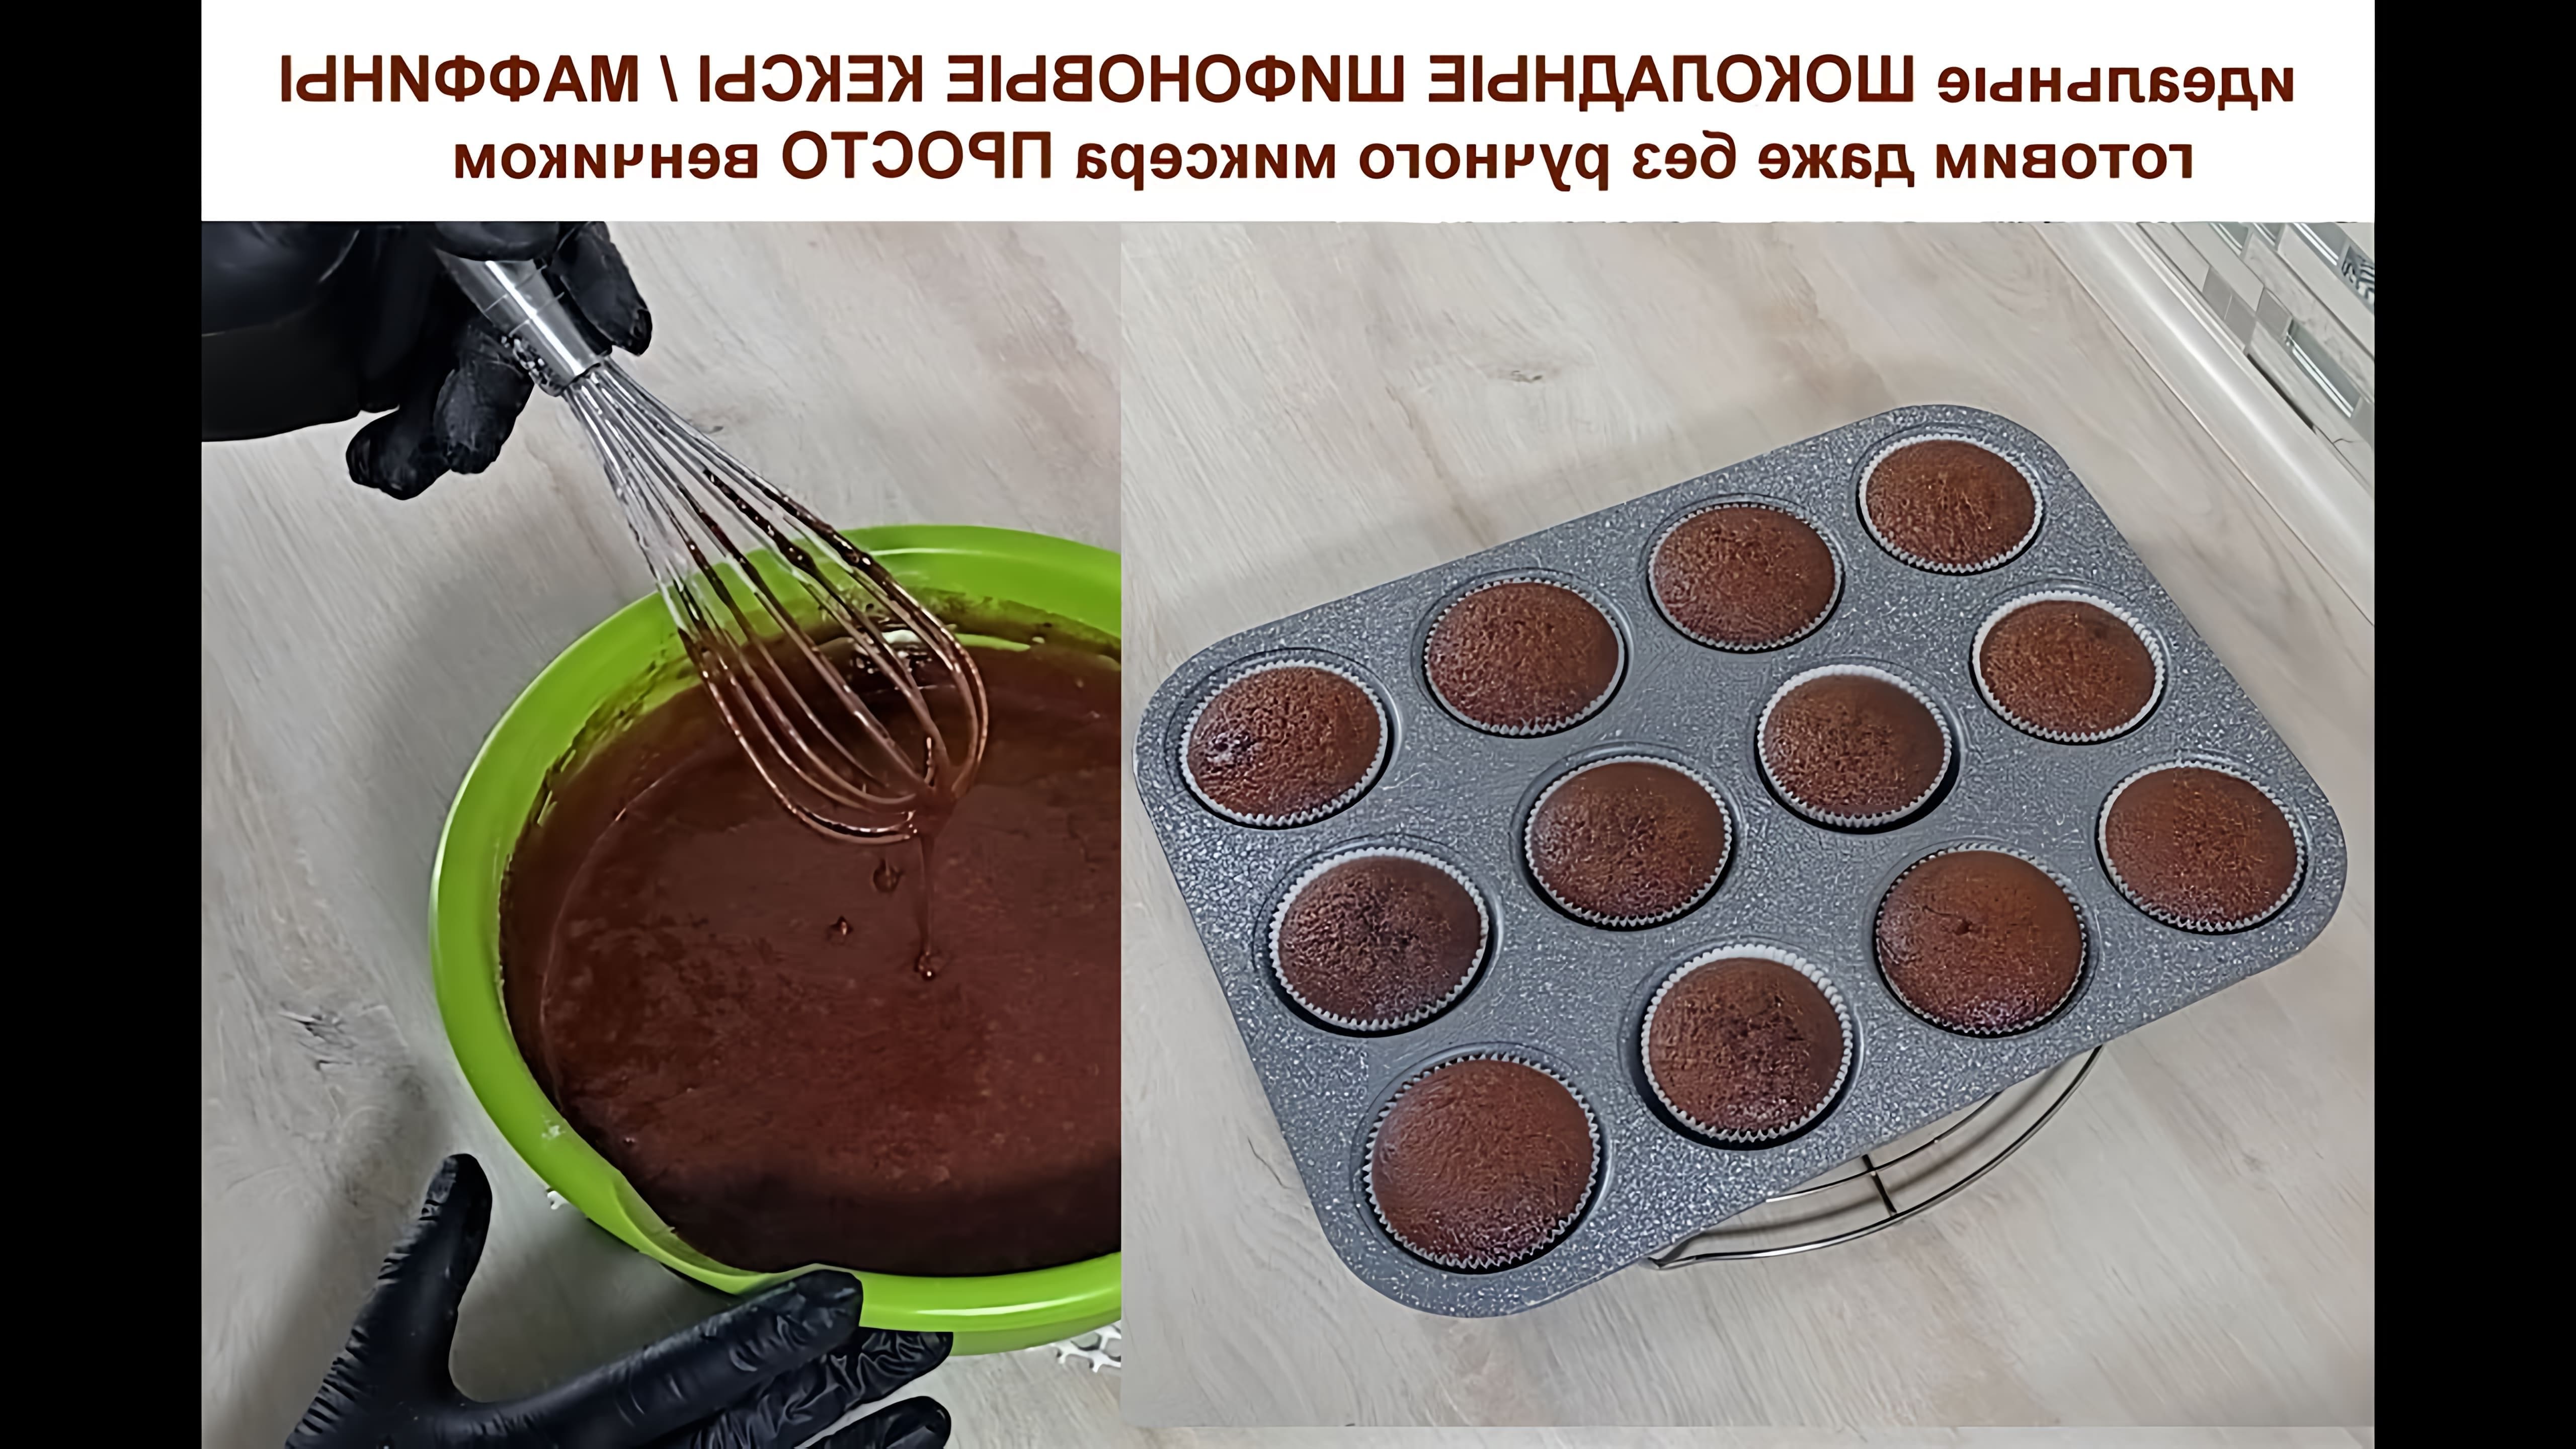 В этом видео демонстрируется рецепт приготовления идеальных шоколадных шифоновых кексов, маффинов и капкейков без использования миксера